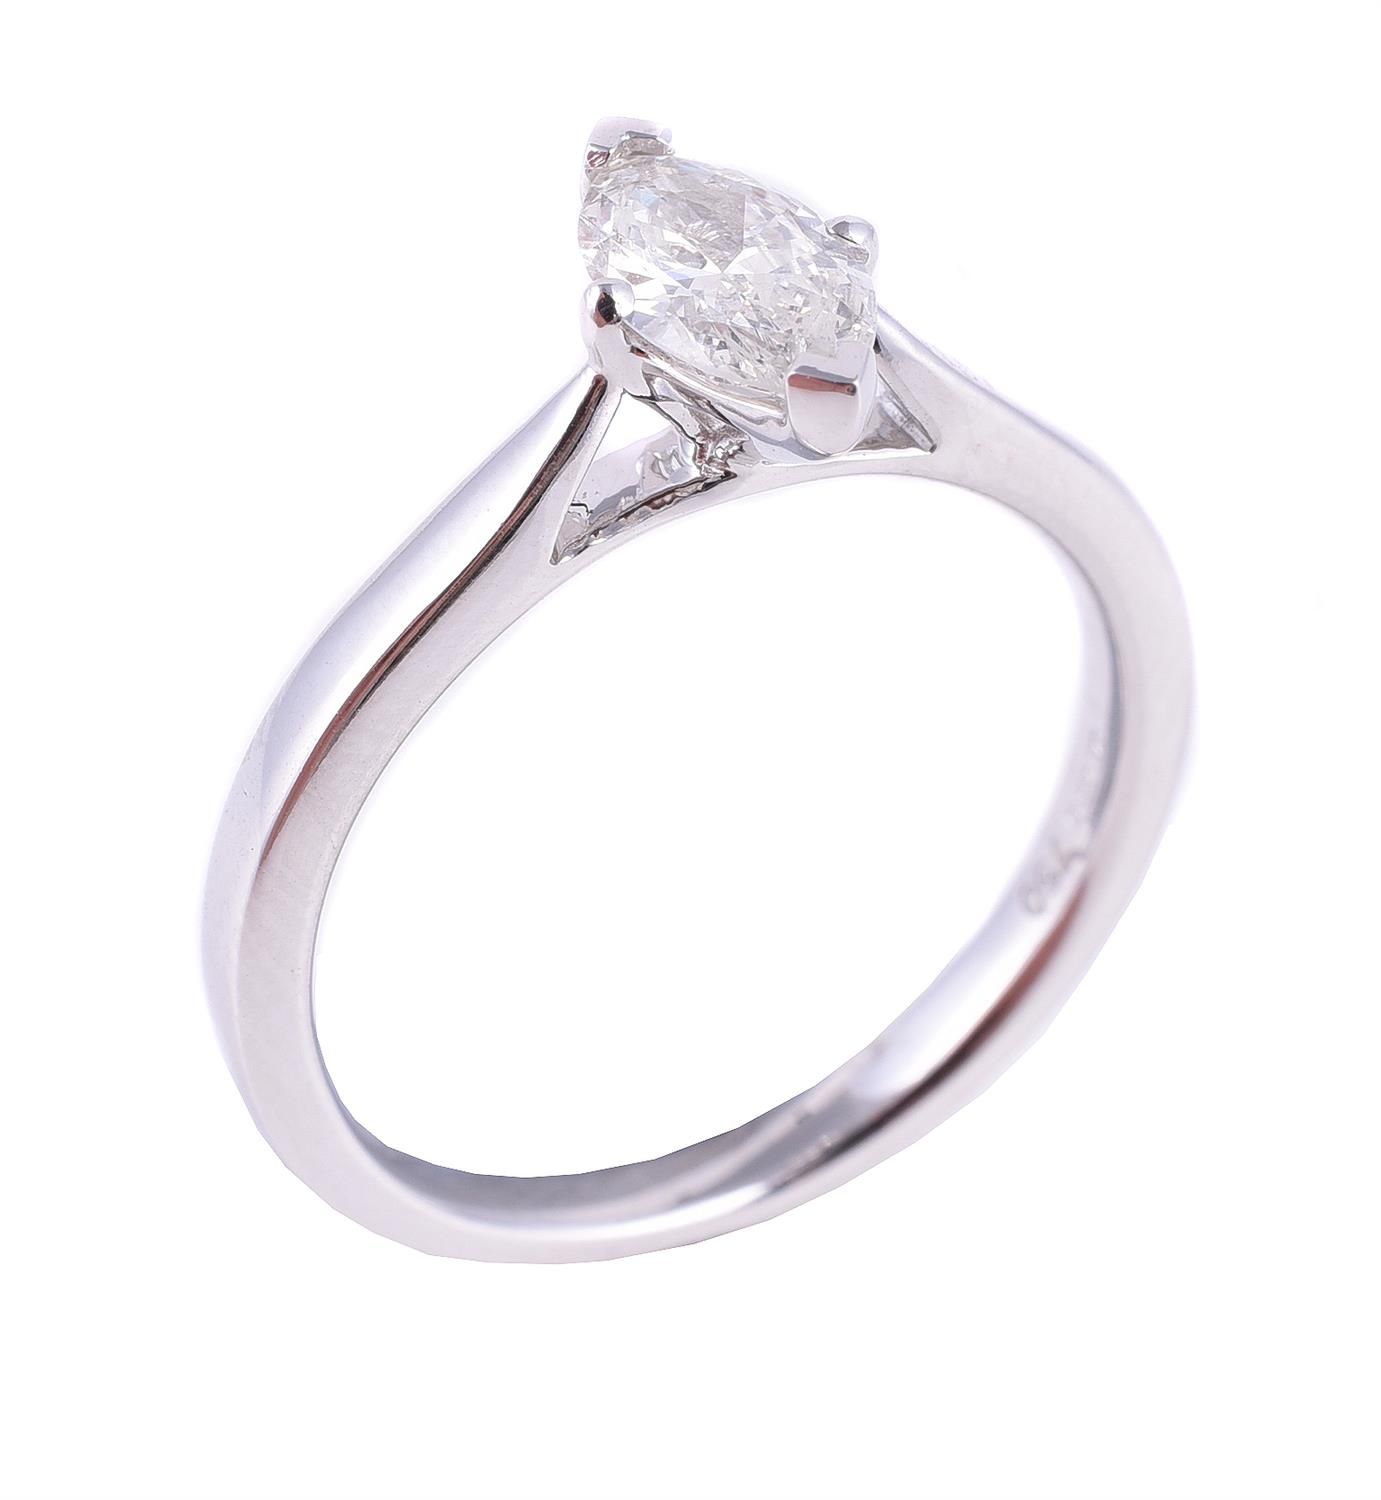 A single stone diamond ring 一枚单石钻石戒指，榄尖形切割钻石估计重0.50克拉，四爪镶嵌，18K金印记，手指尺寸M，总重3克